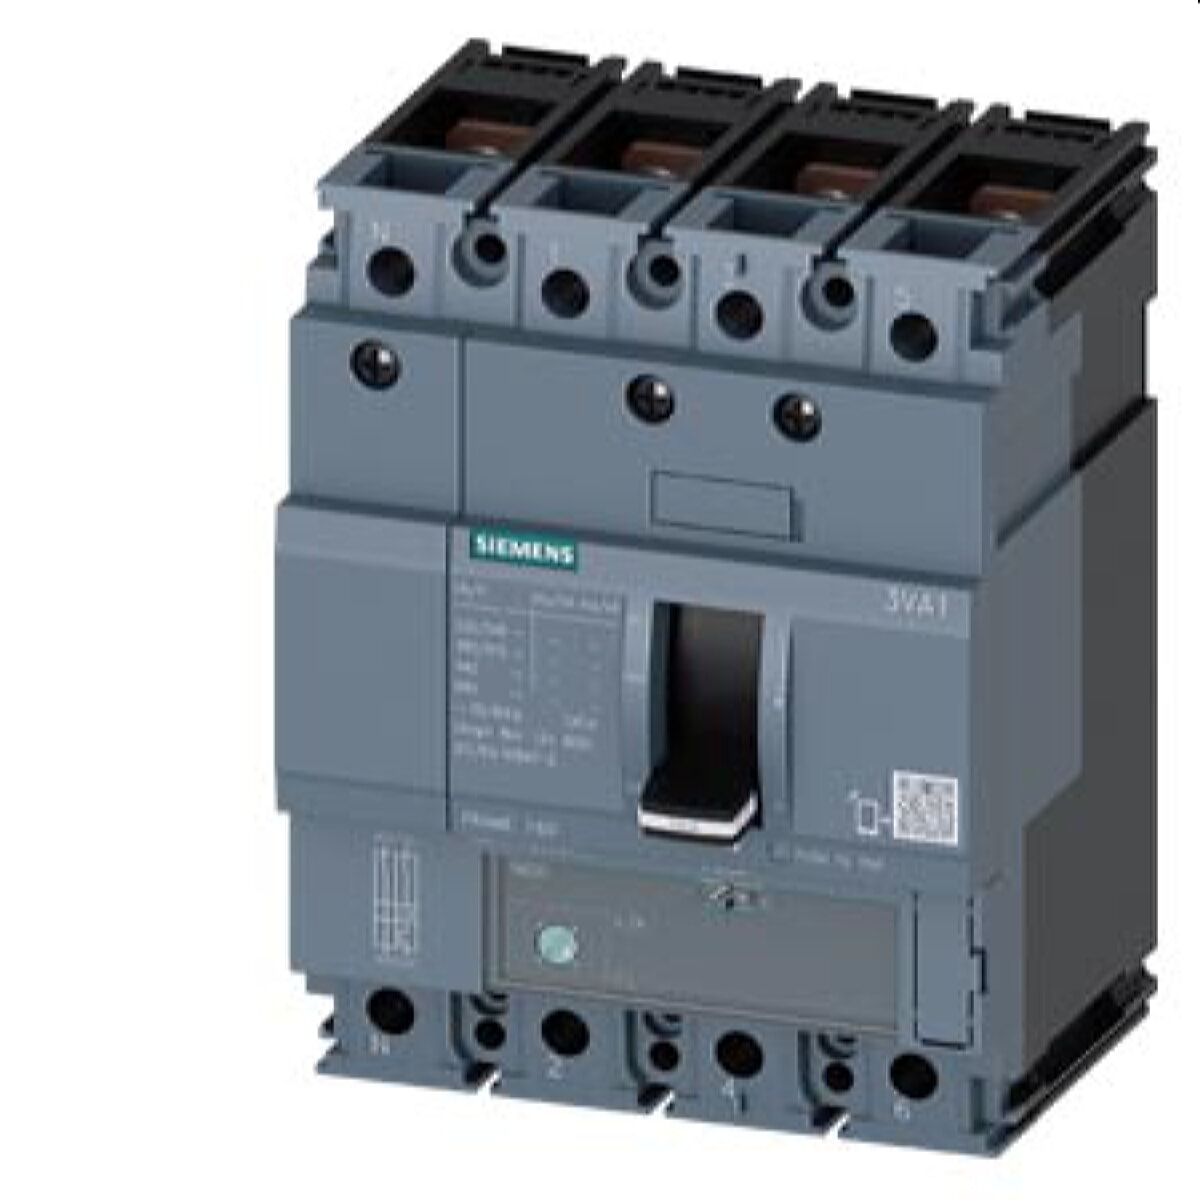 Siemens Leistungsschalter 3VA1 36kA ATFM88-125A 3VA1112-4EE42-0AA0